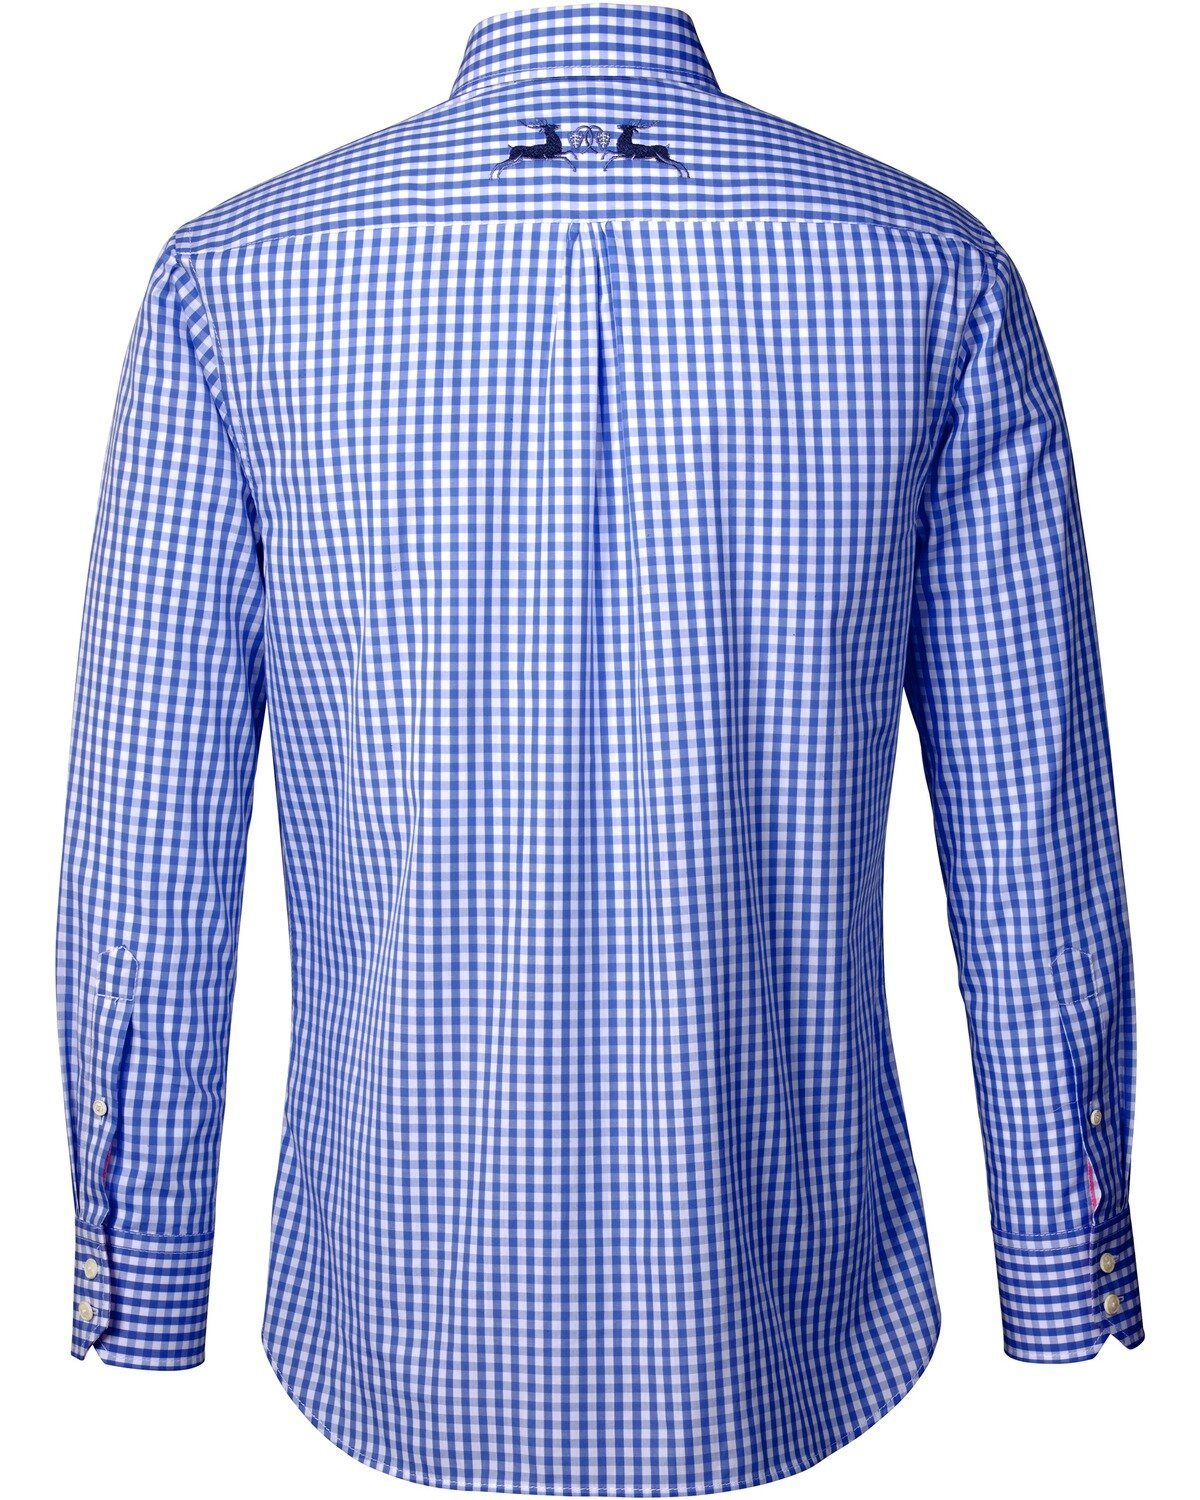 Stickerei Reitmayer Blau Trachtenhemd mit Vichykaro-Hemd